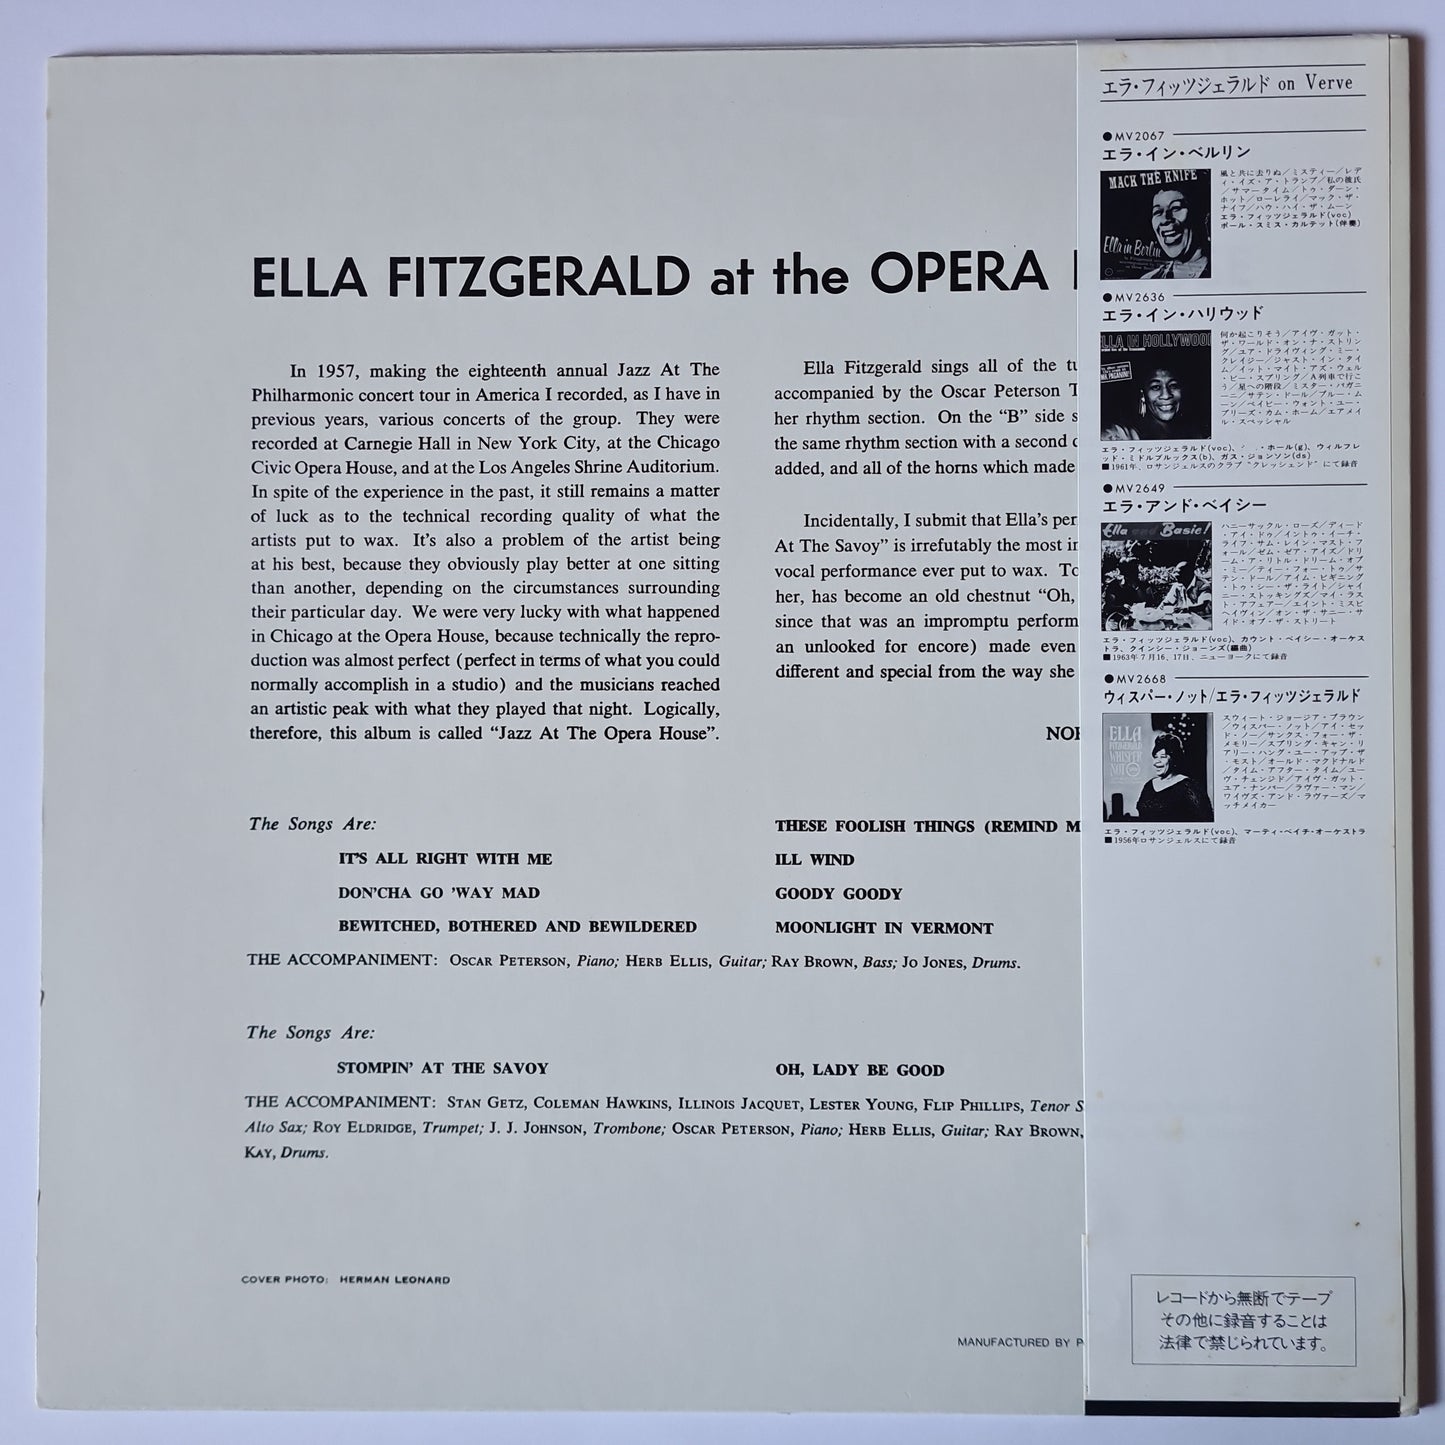 Ella Fitzgerald – Ella Fitzgerald At The Opera House- 1981 Japanese Pressing - Vinyl Record